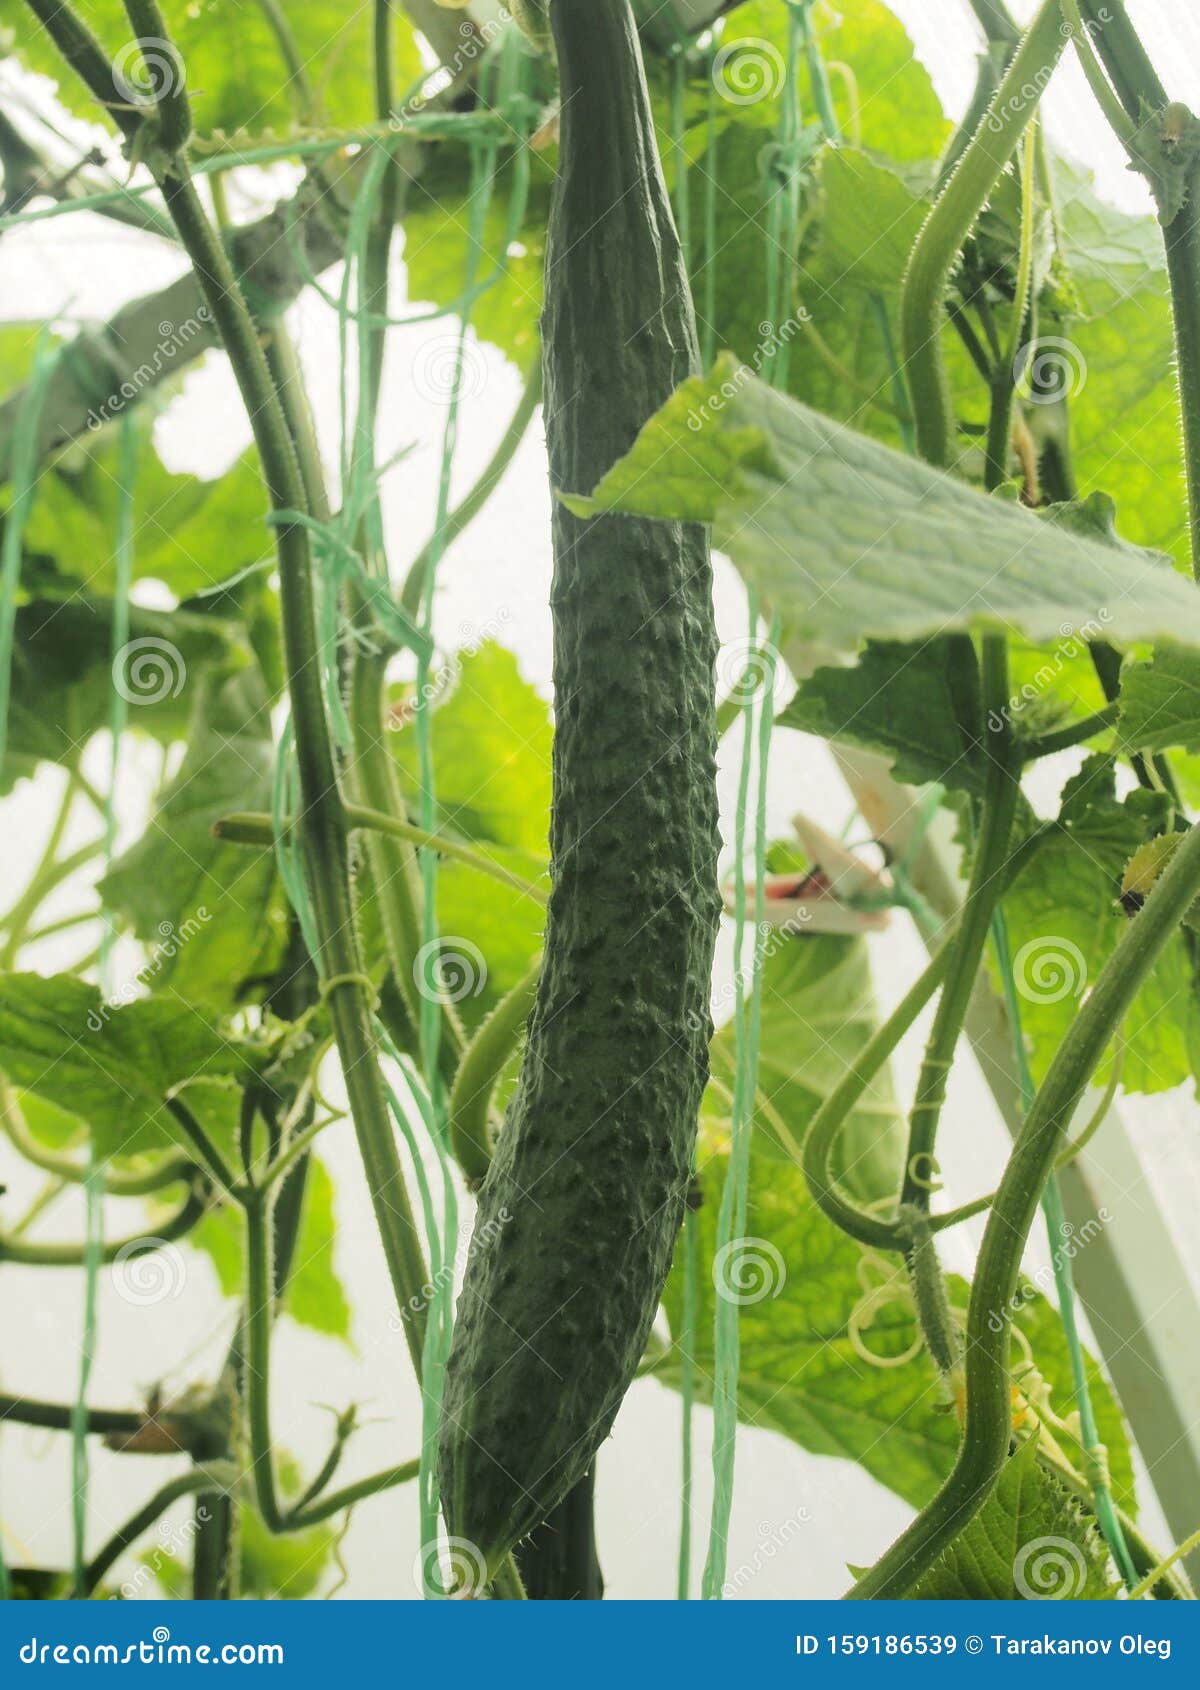 幼黄瓜在花园里生长特写 库存照片. 图片 包括有 新鲜, 绽放, 生长, 农夫, 耕种, 酥脆, 食物 - 226680180